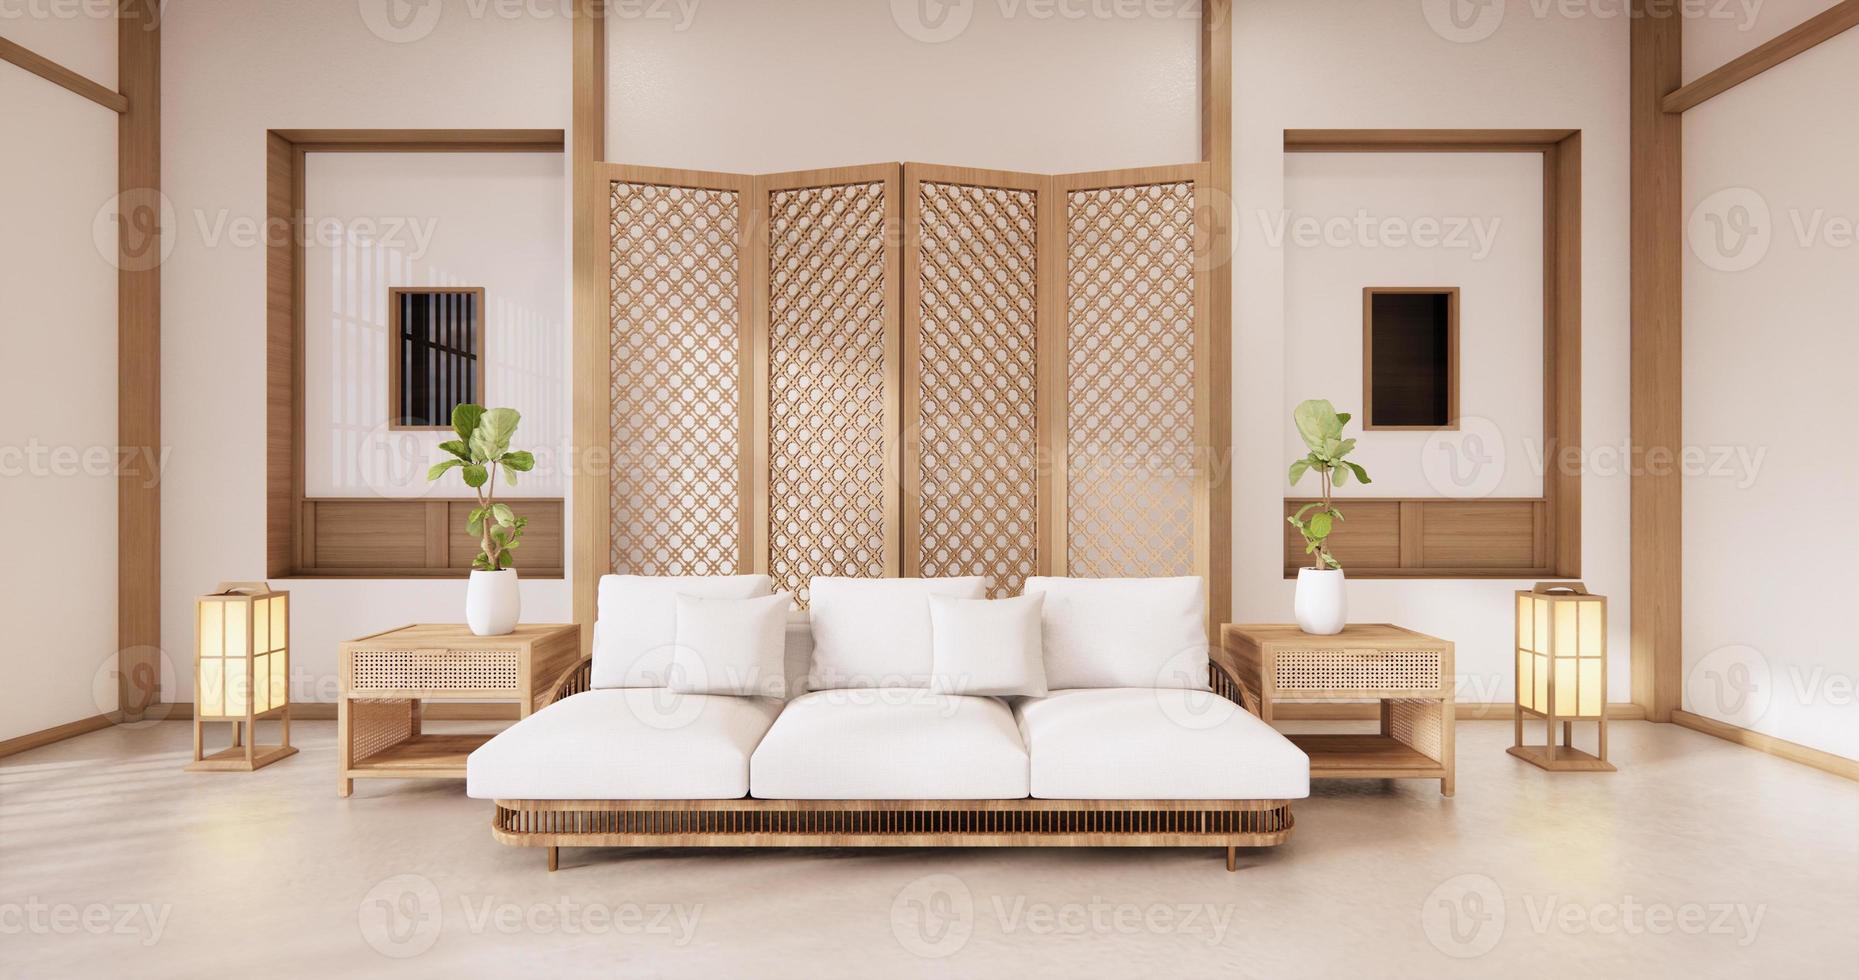 Trennen Sie Japaner auf tropischem Interieur des Zimmers mit Tatami-Mattenboden und weißer Wand. 3D-Rendering foto